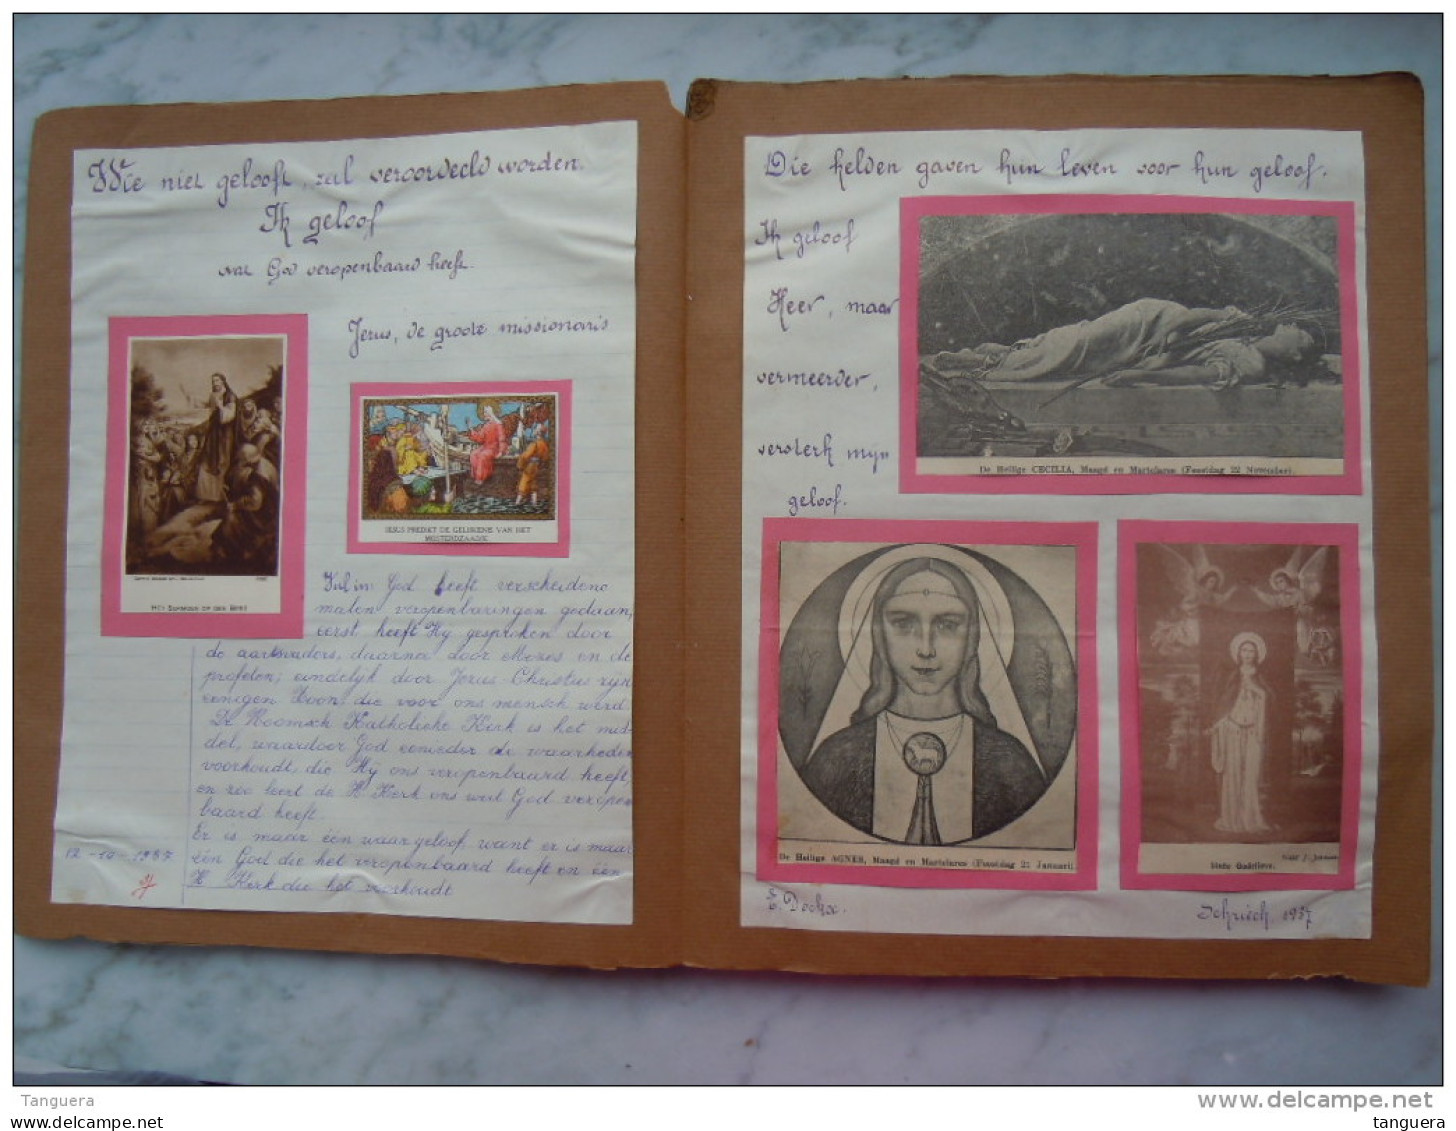 Belgie Schriek 1937-1938 Godsdienst boek gemaakt door leerling met prentjes, tekeningen en kranteknipsels